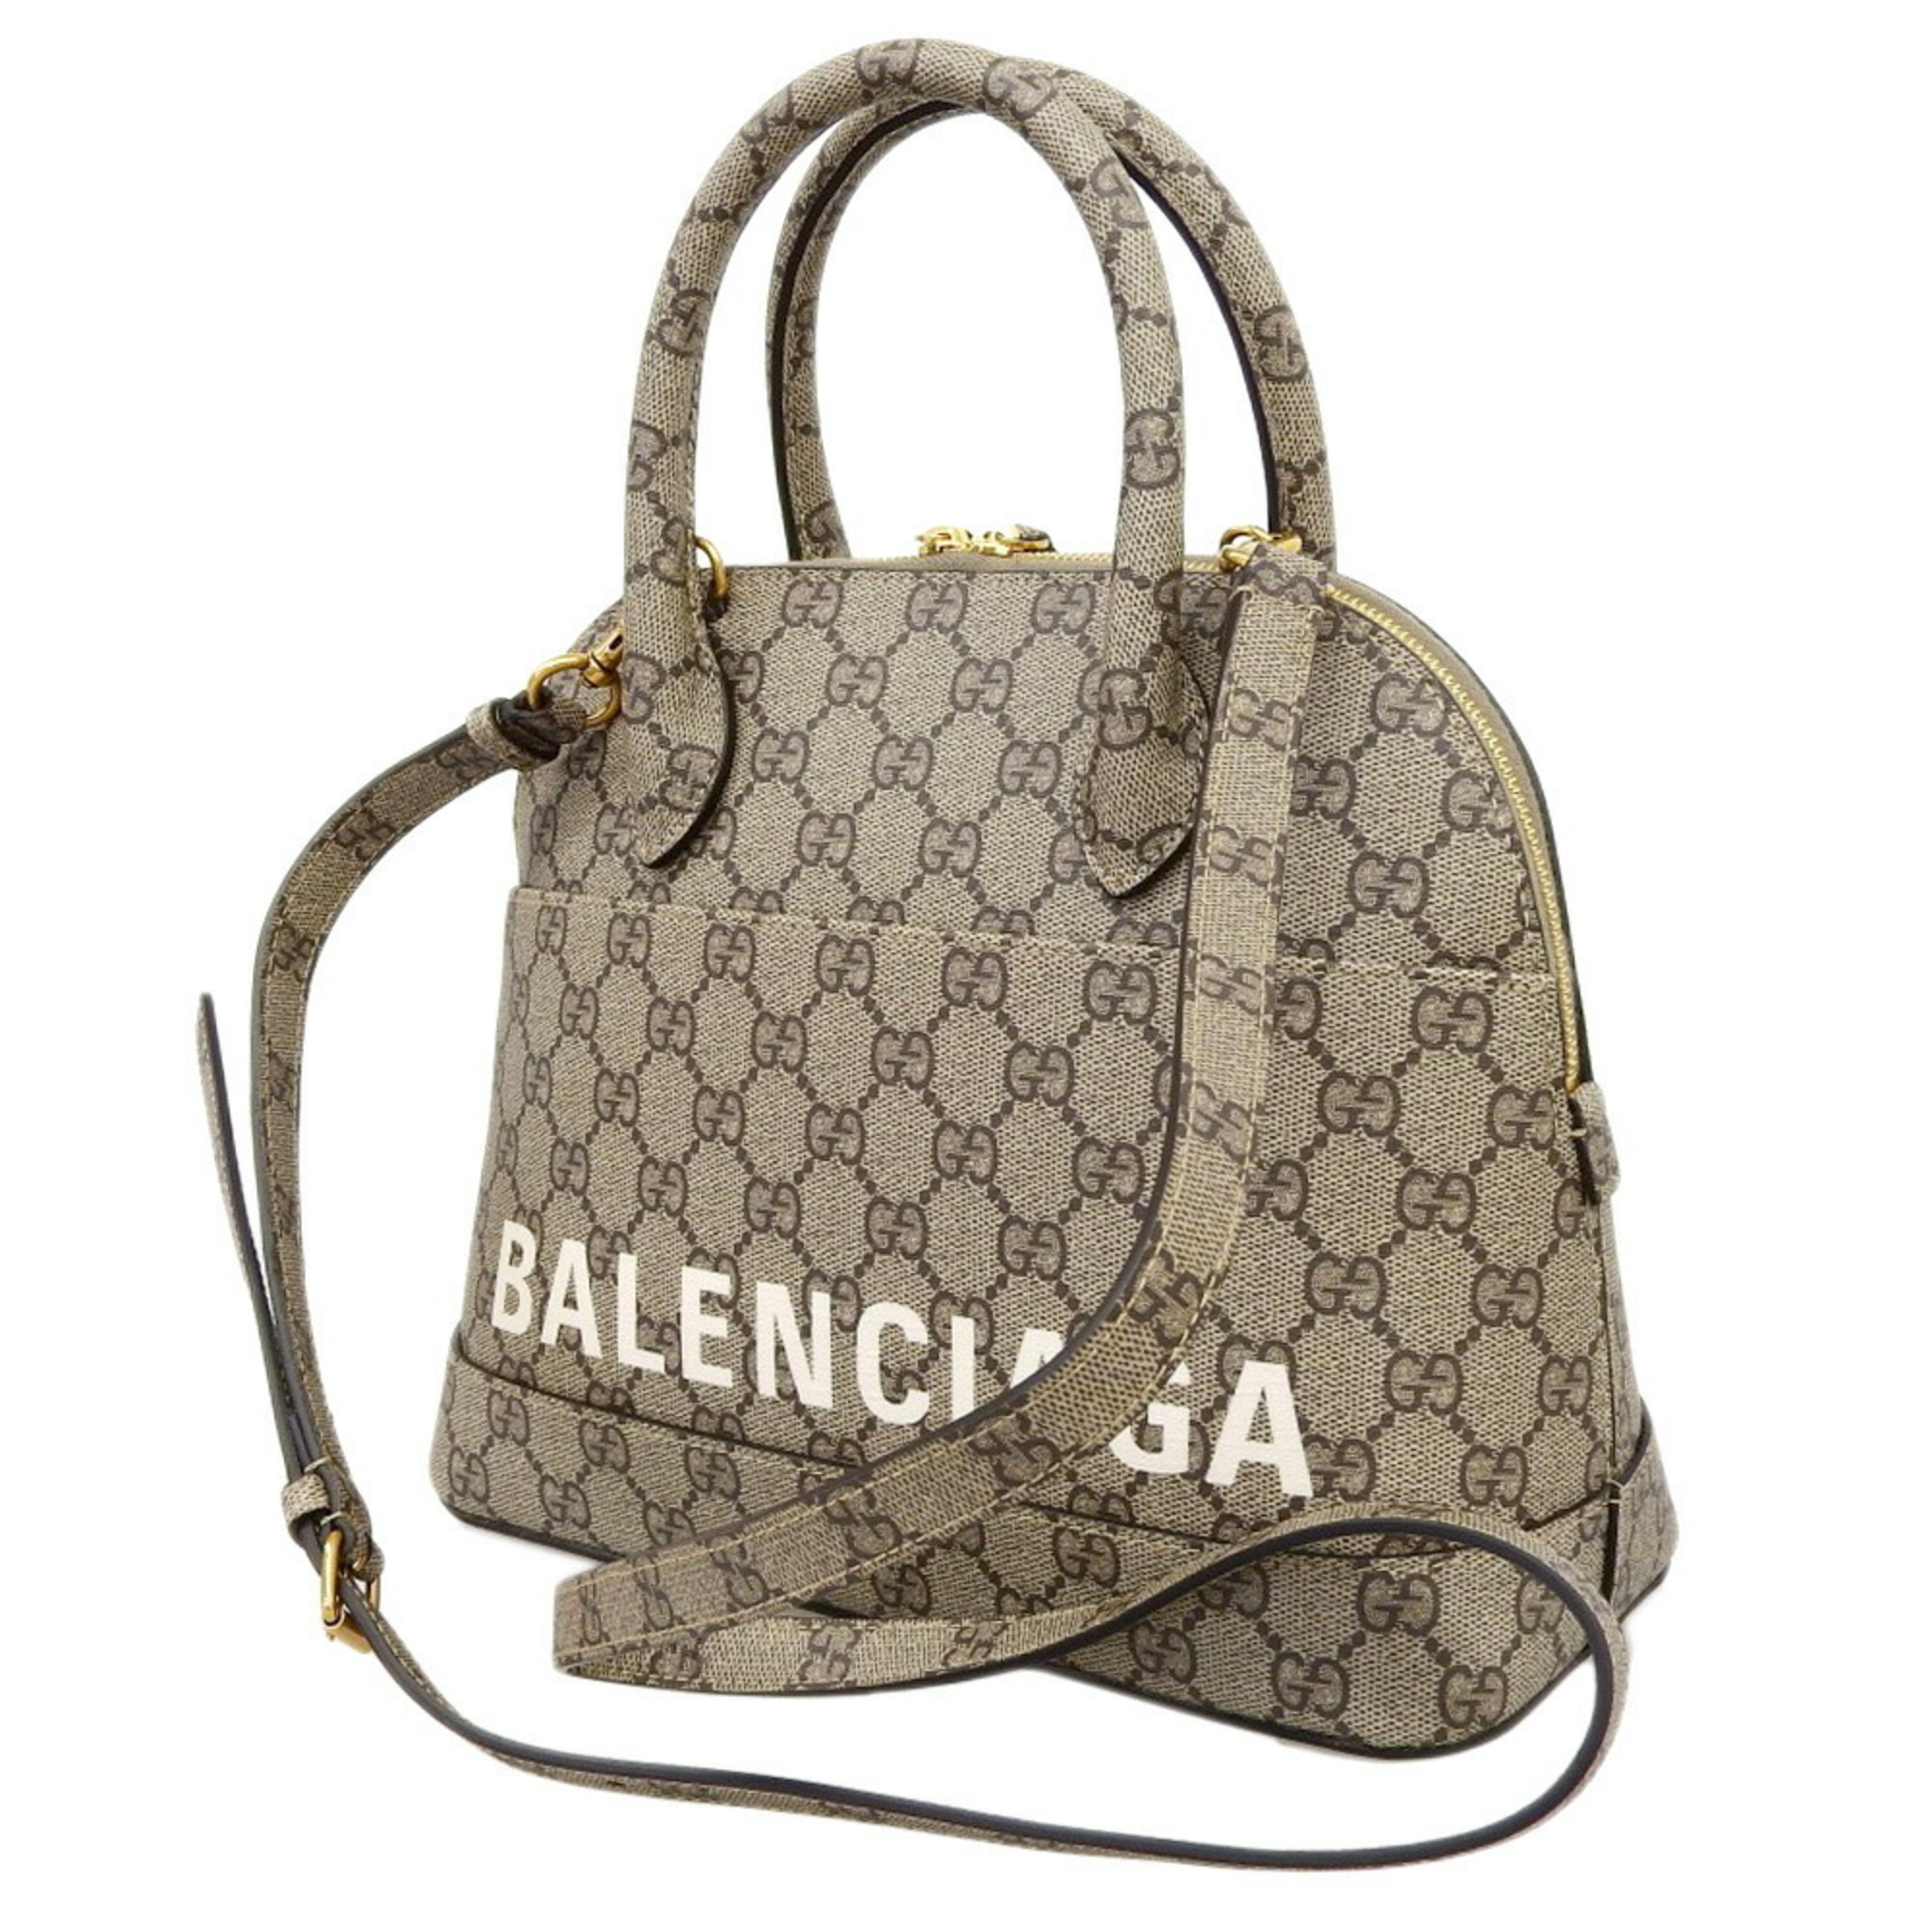 Gucci x Balenciaga The Hacker Project Ville Small Bag 681699 520981 UQOAT